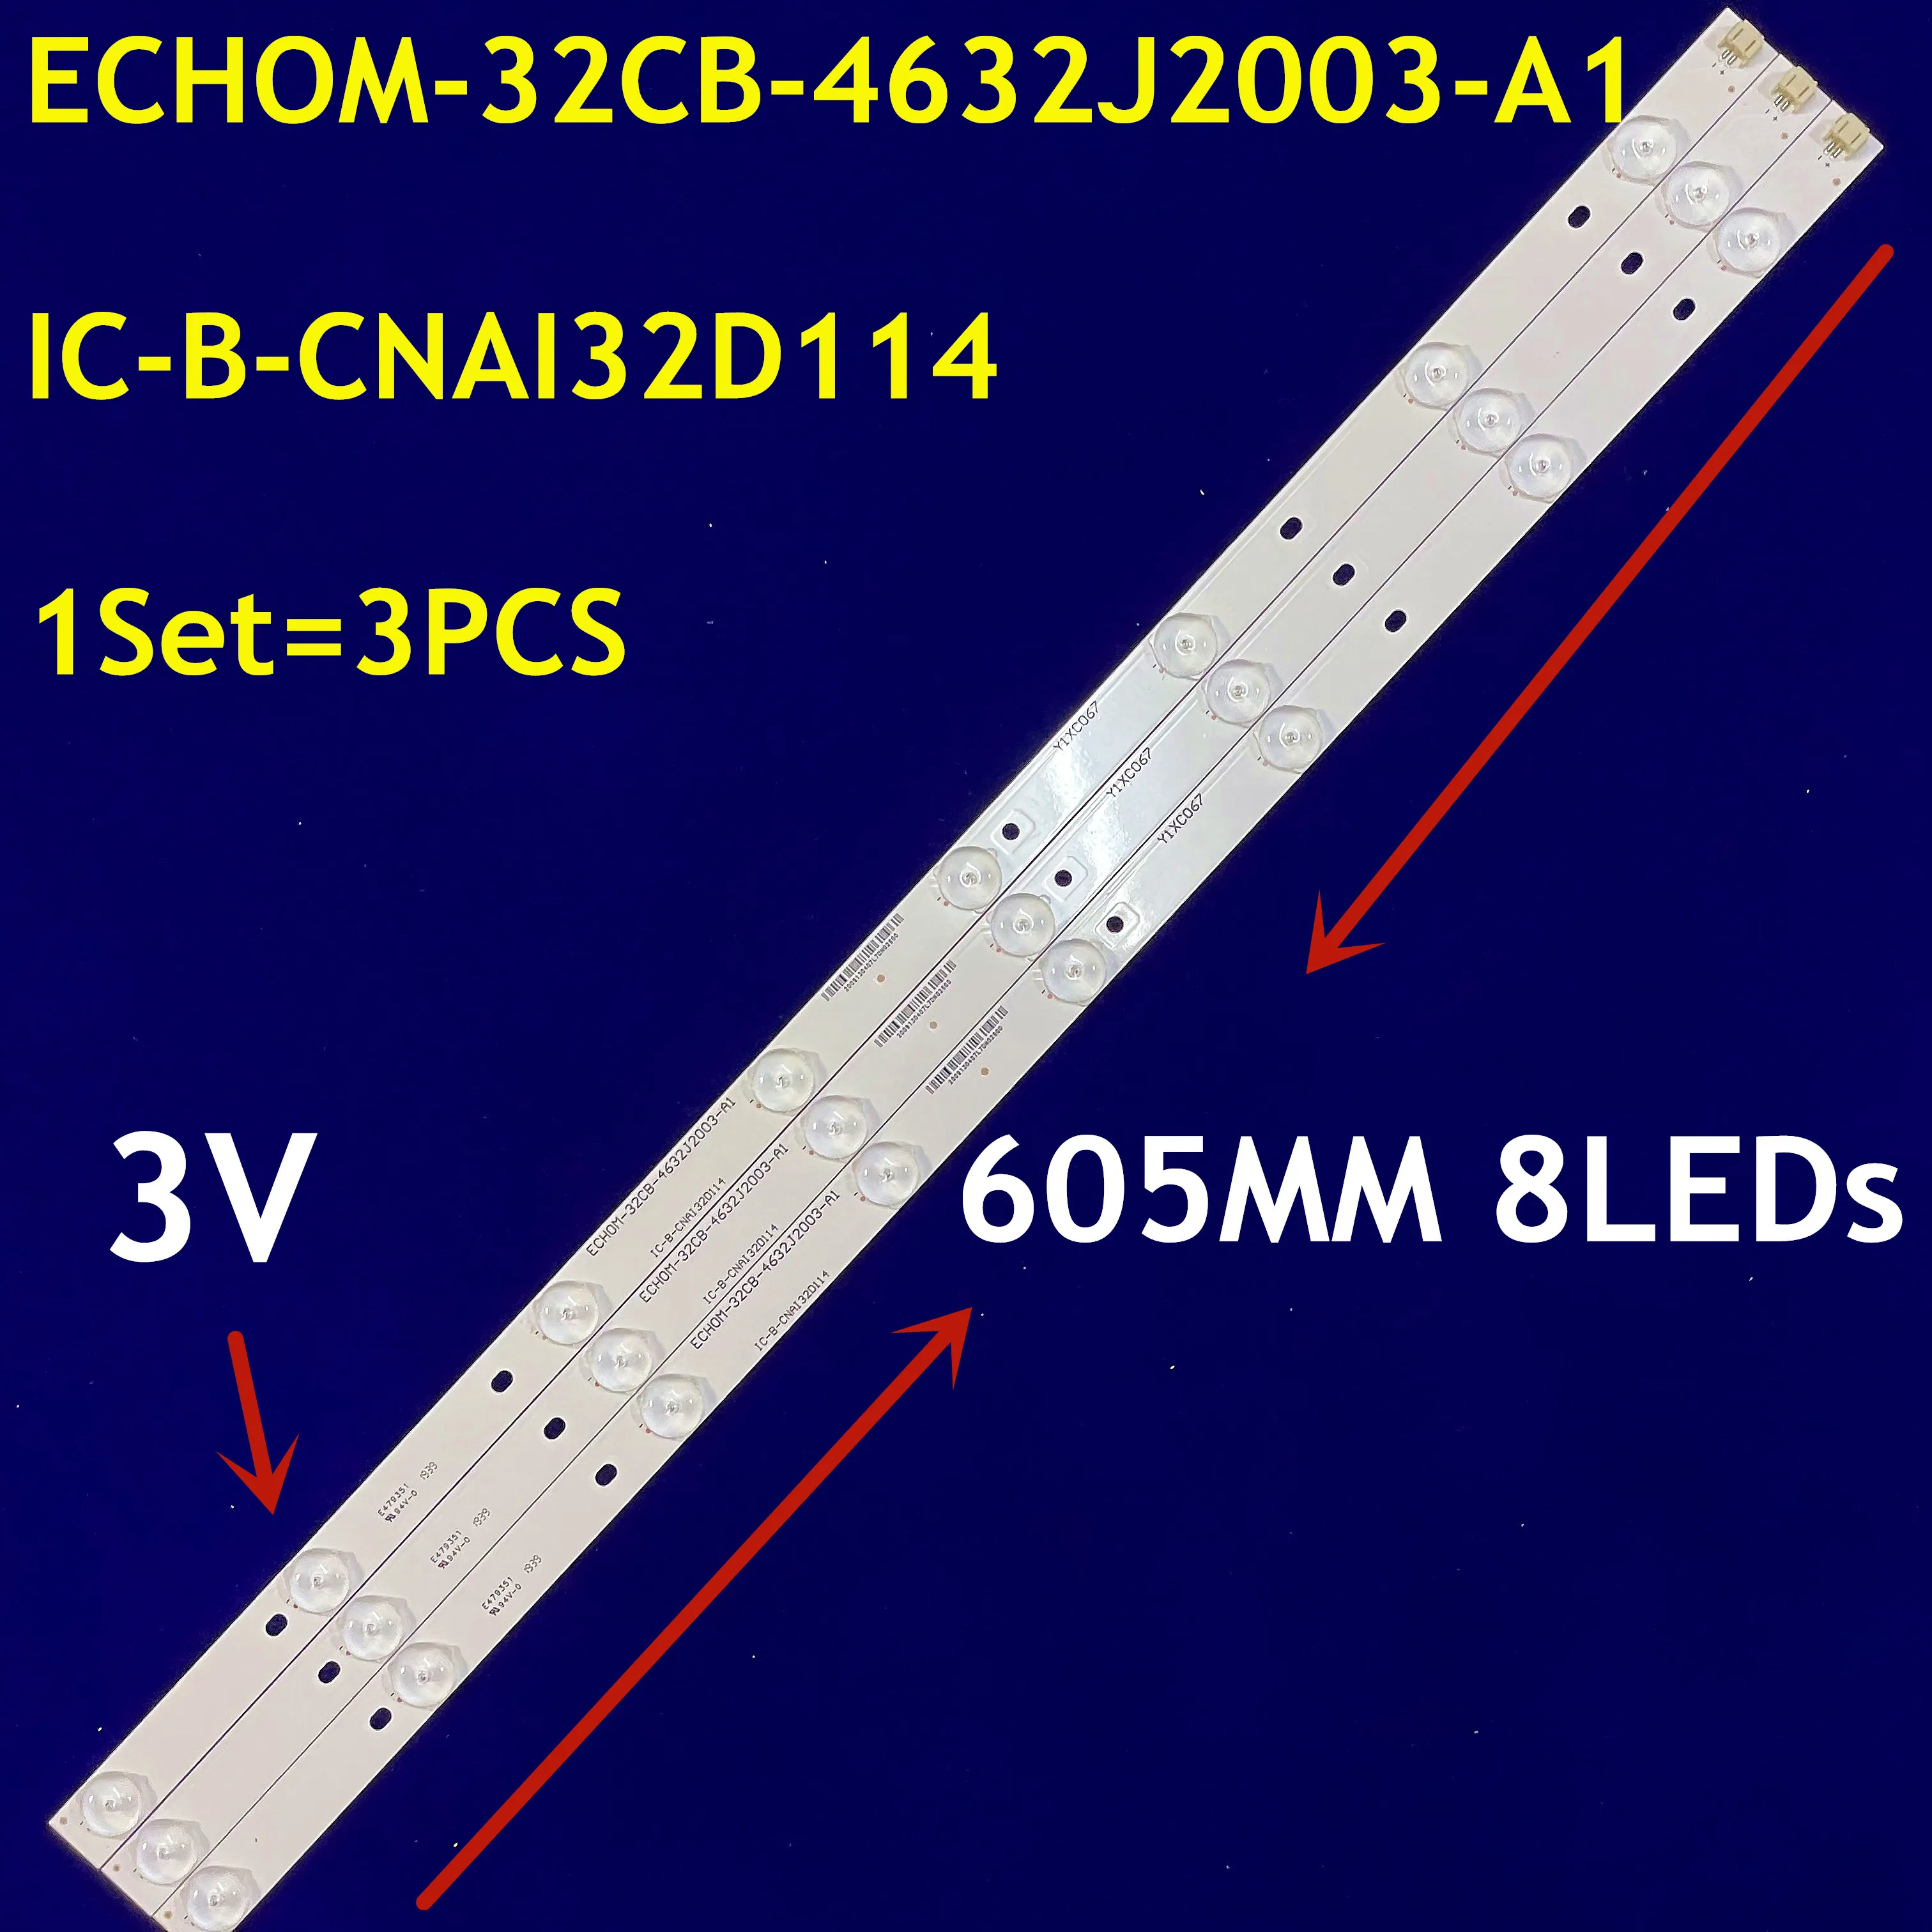 5set LED Strip 8 Lamp For ECHOM-32CB-4632J2003-A1 IC-B-CNAI32D114 Y5CD065 Y1XC067 LC-32TL2900 LC-32TL2800